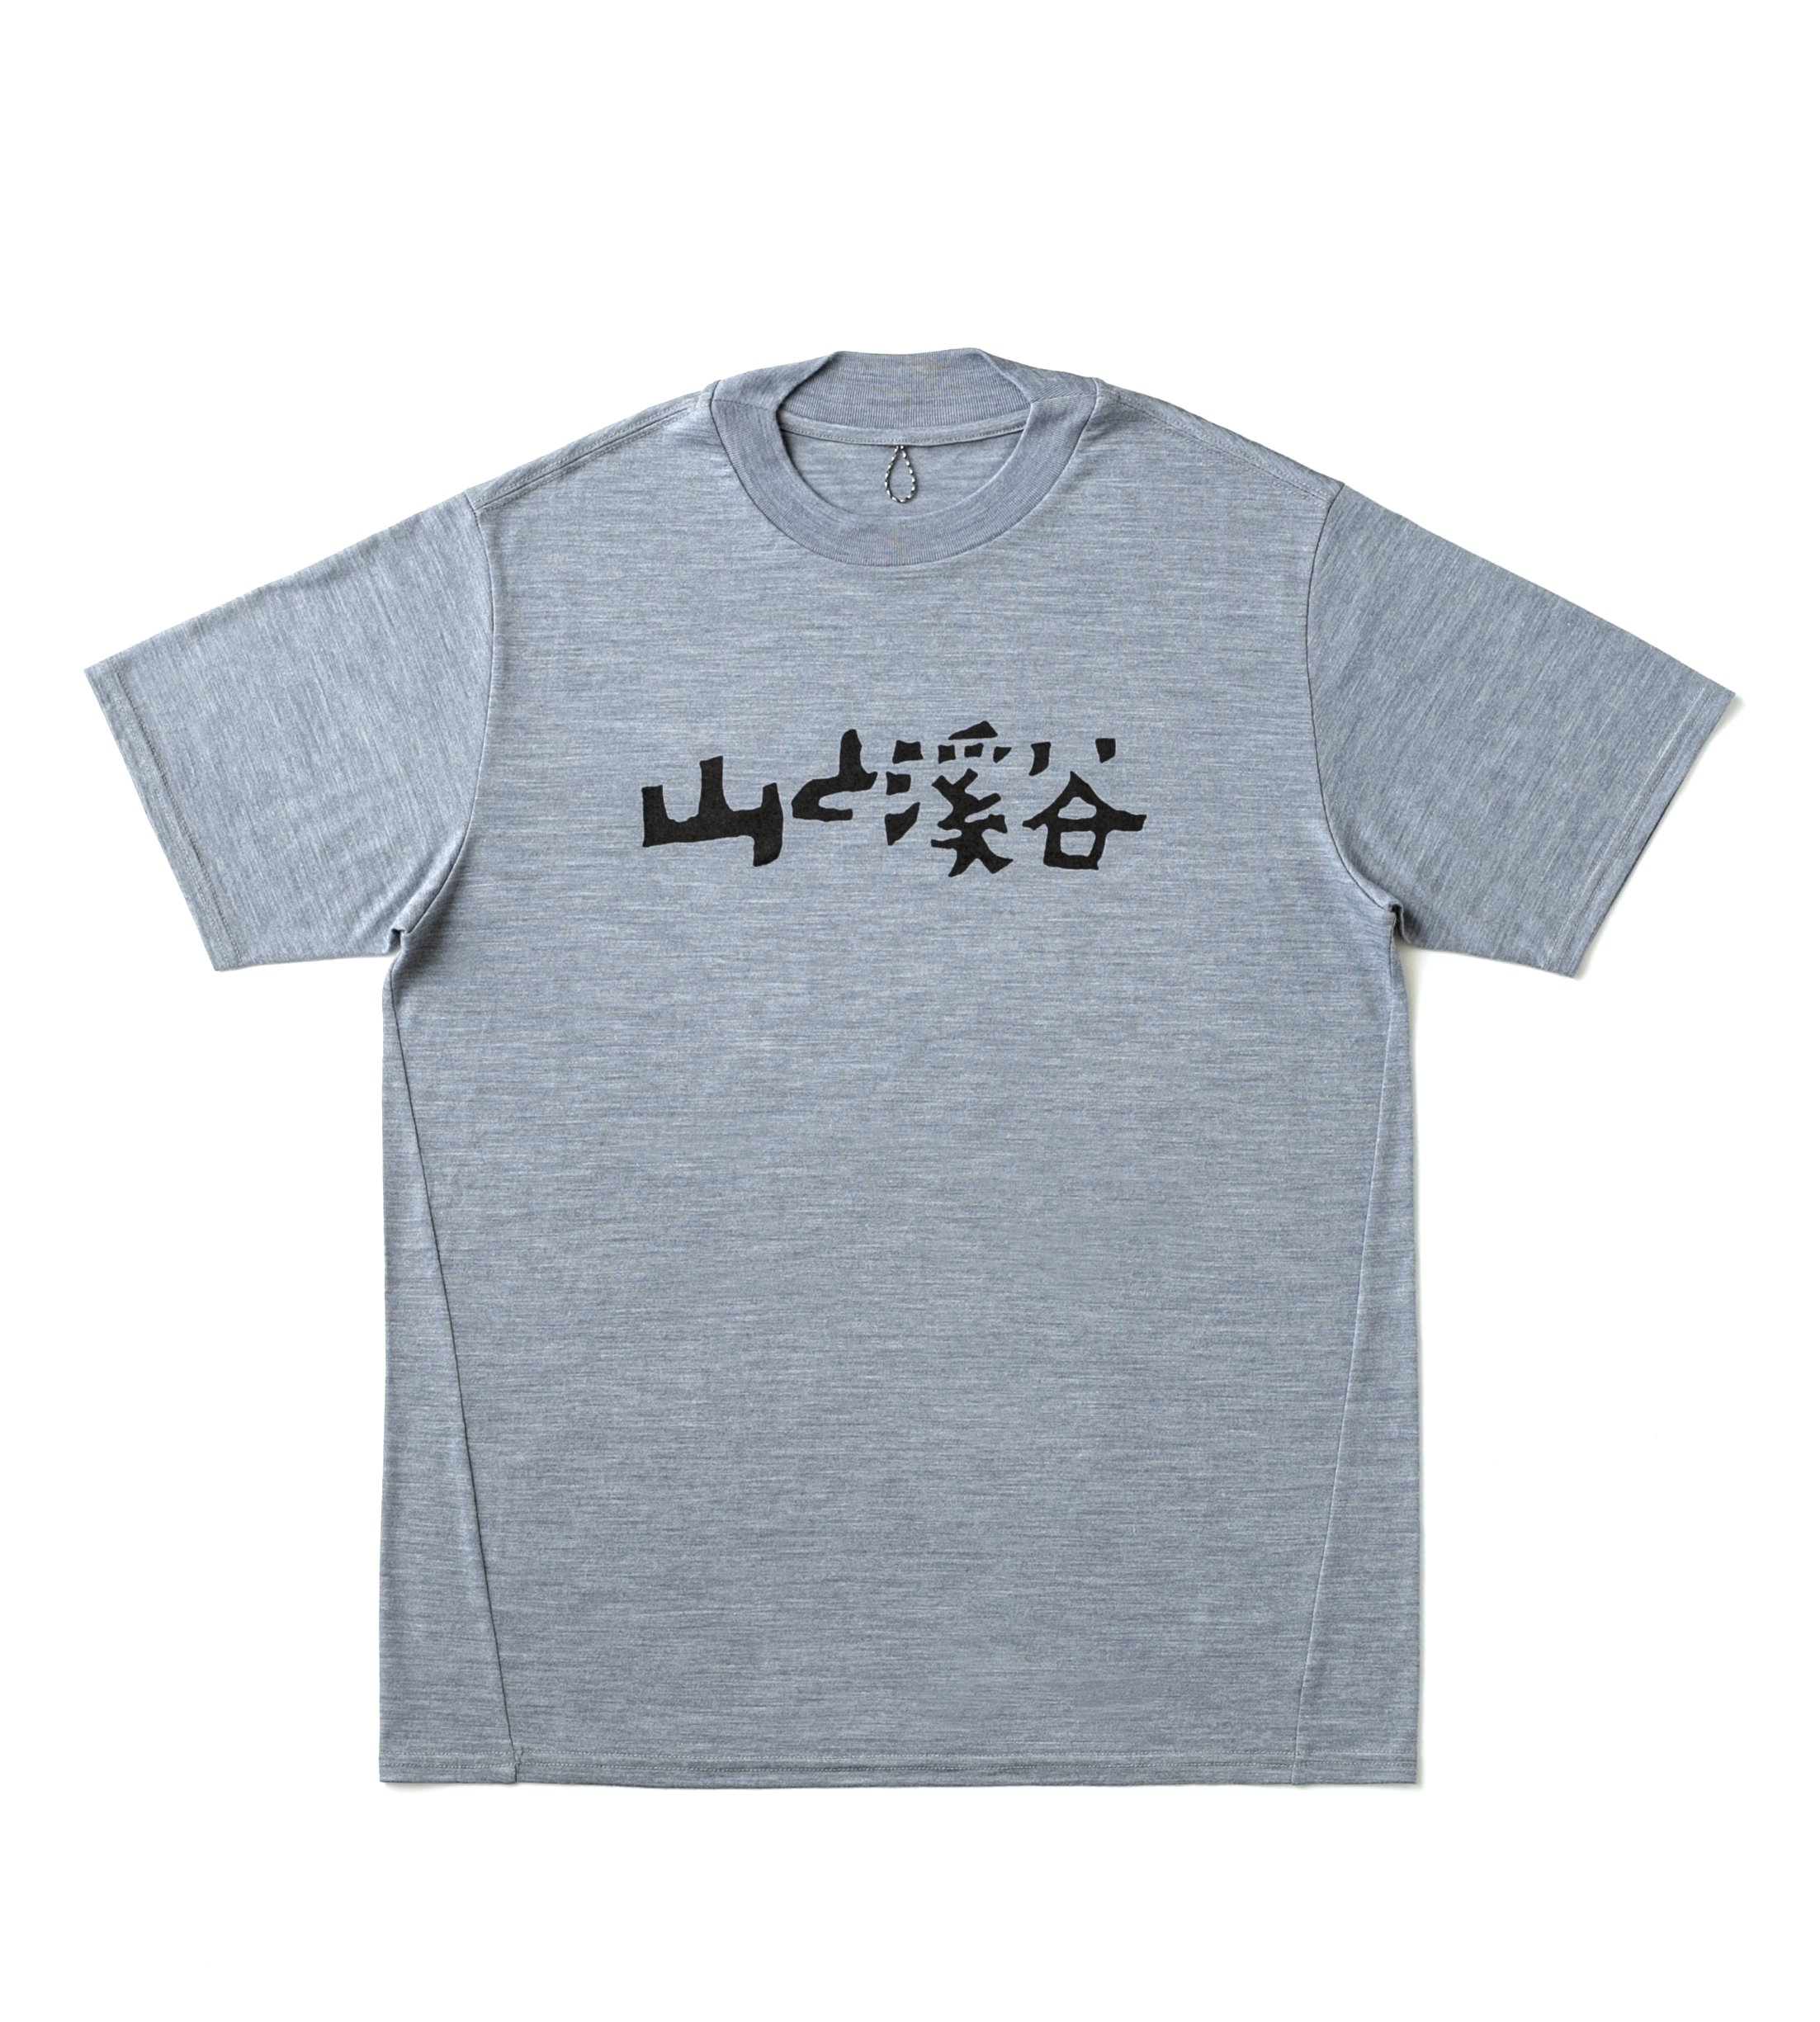 出版社が出店するオンデマンドプリントTシャツモール「pTa.shop」にて、期間限定『山と溪谷』メリノウールTシャツが販売開始のサブ画像1